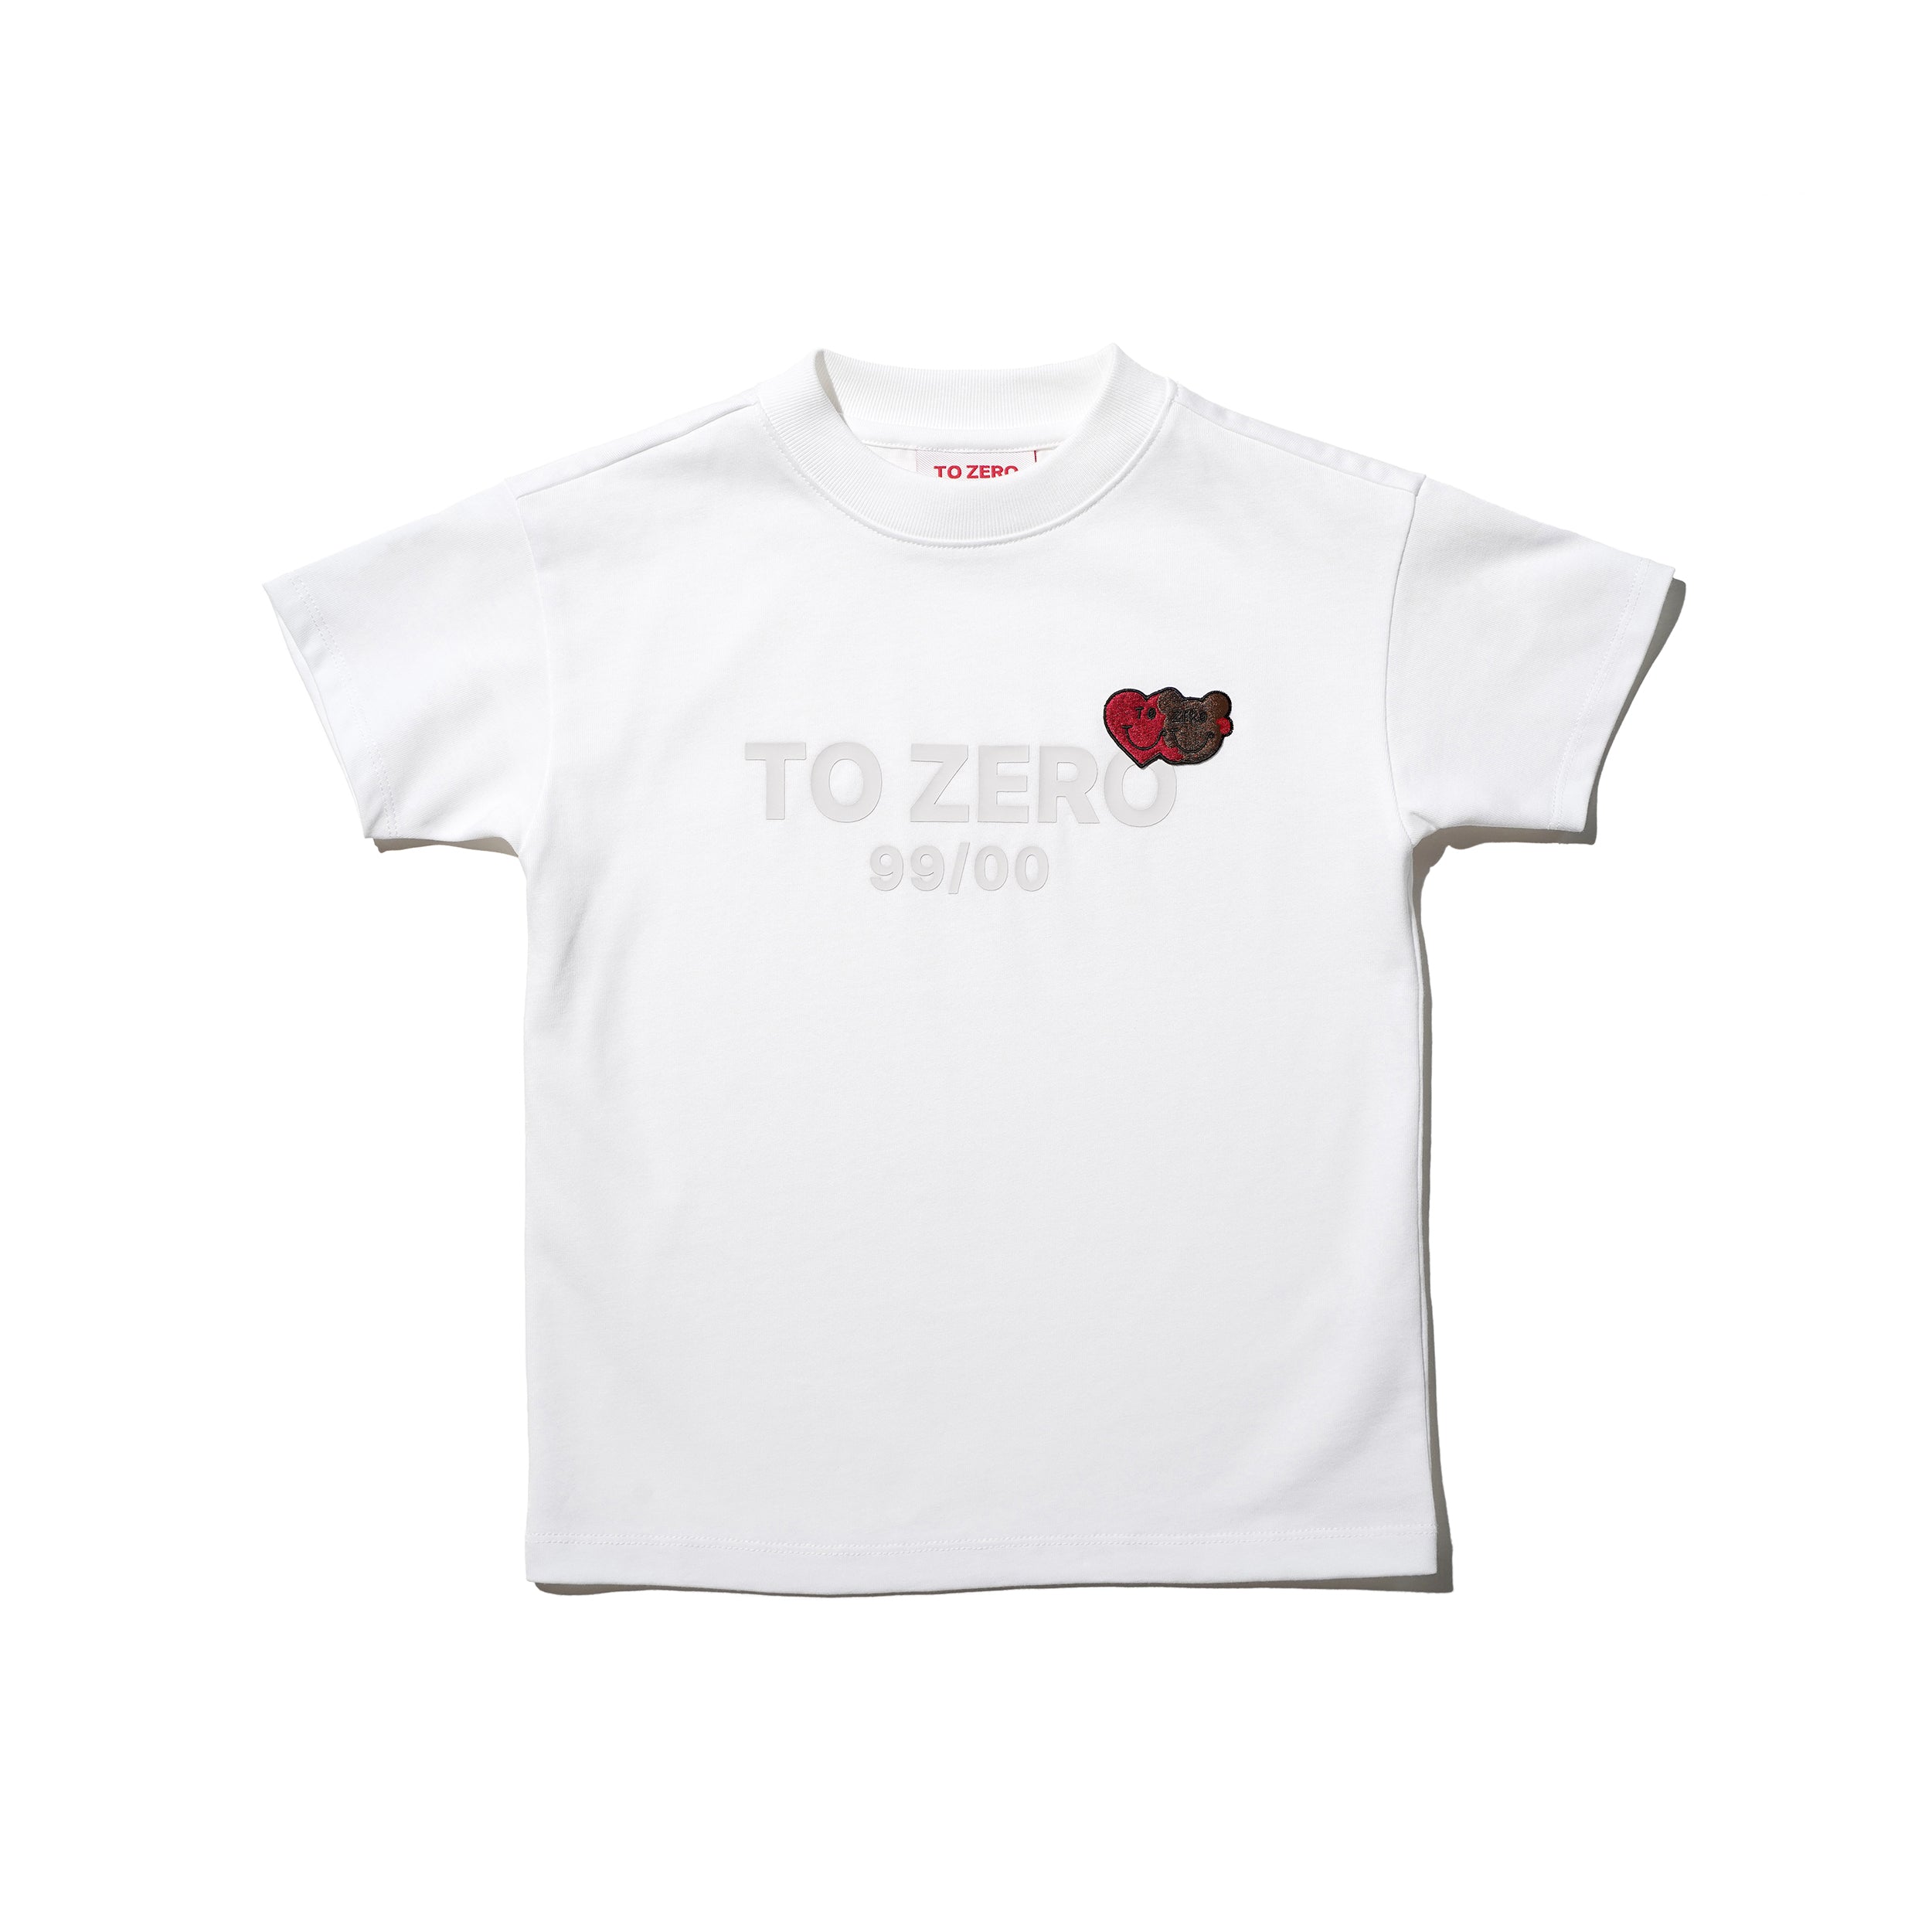 'TO ZERO #98' 童裝T恤